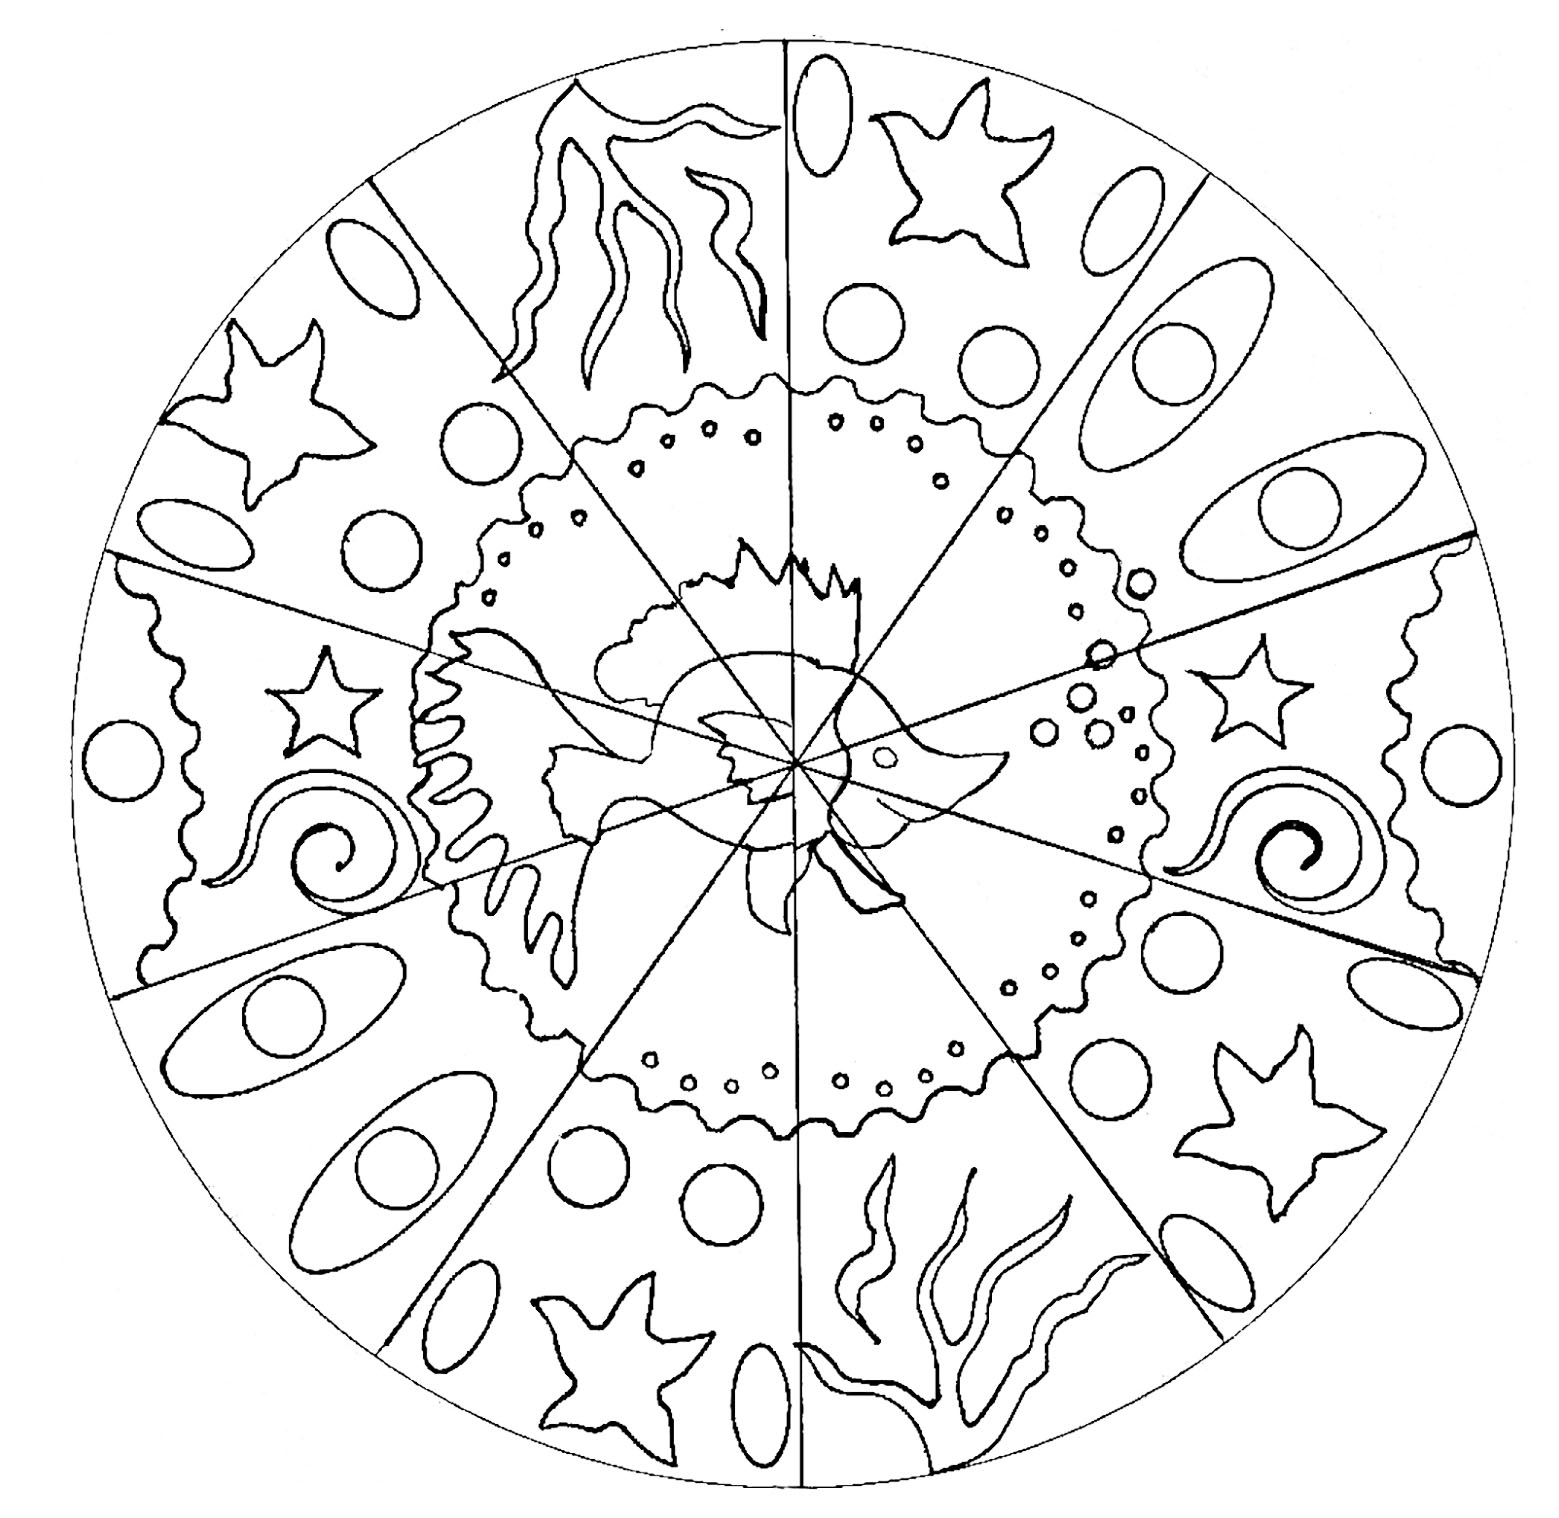 Un coloriage de Mandala pour les plus jeunes, faible niveau de difficulté. Il y a un joli poisson au milieu